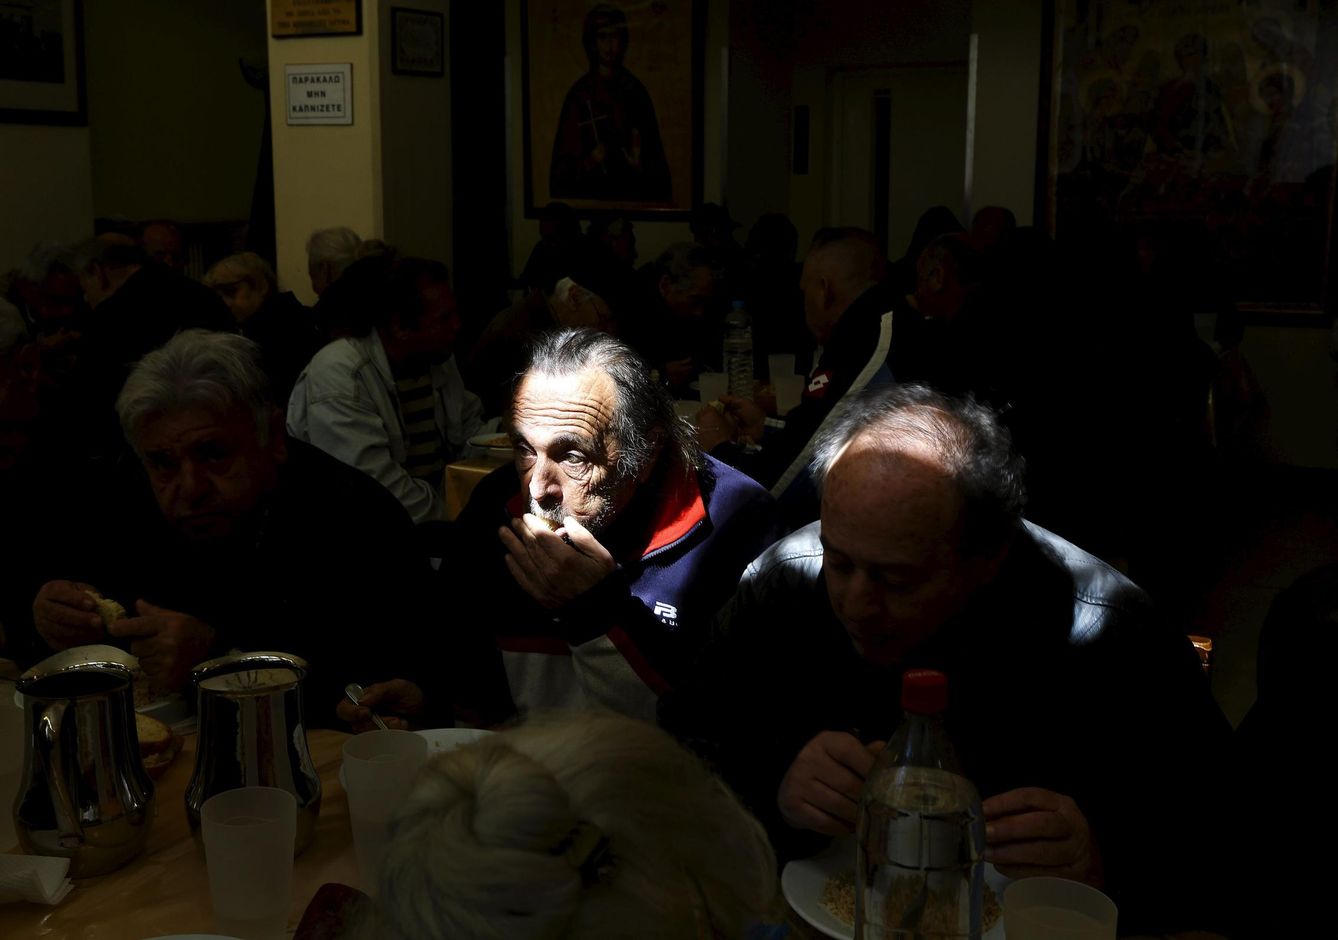 Griegos sin recursos comen en un centro de distribución de alimentos en Atenas (Reuters).